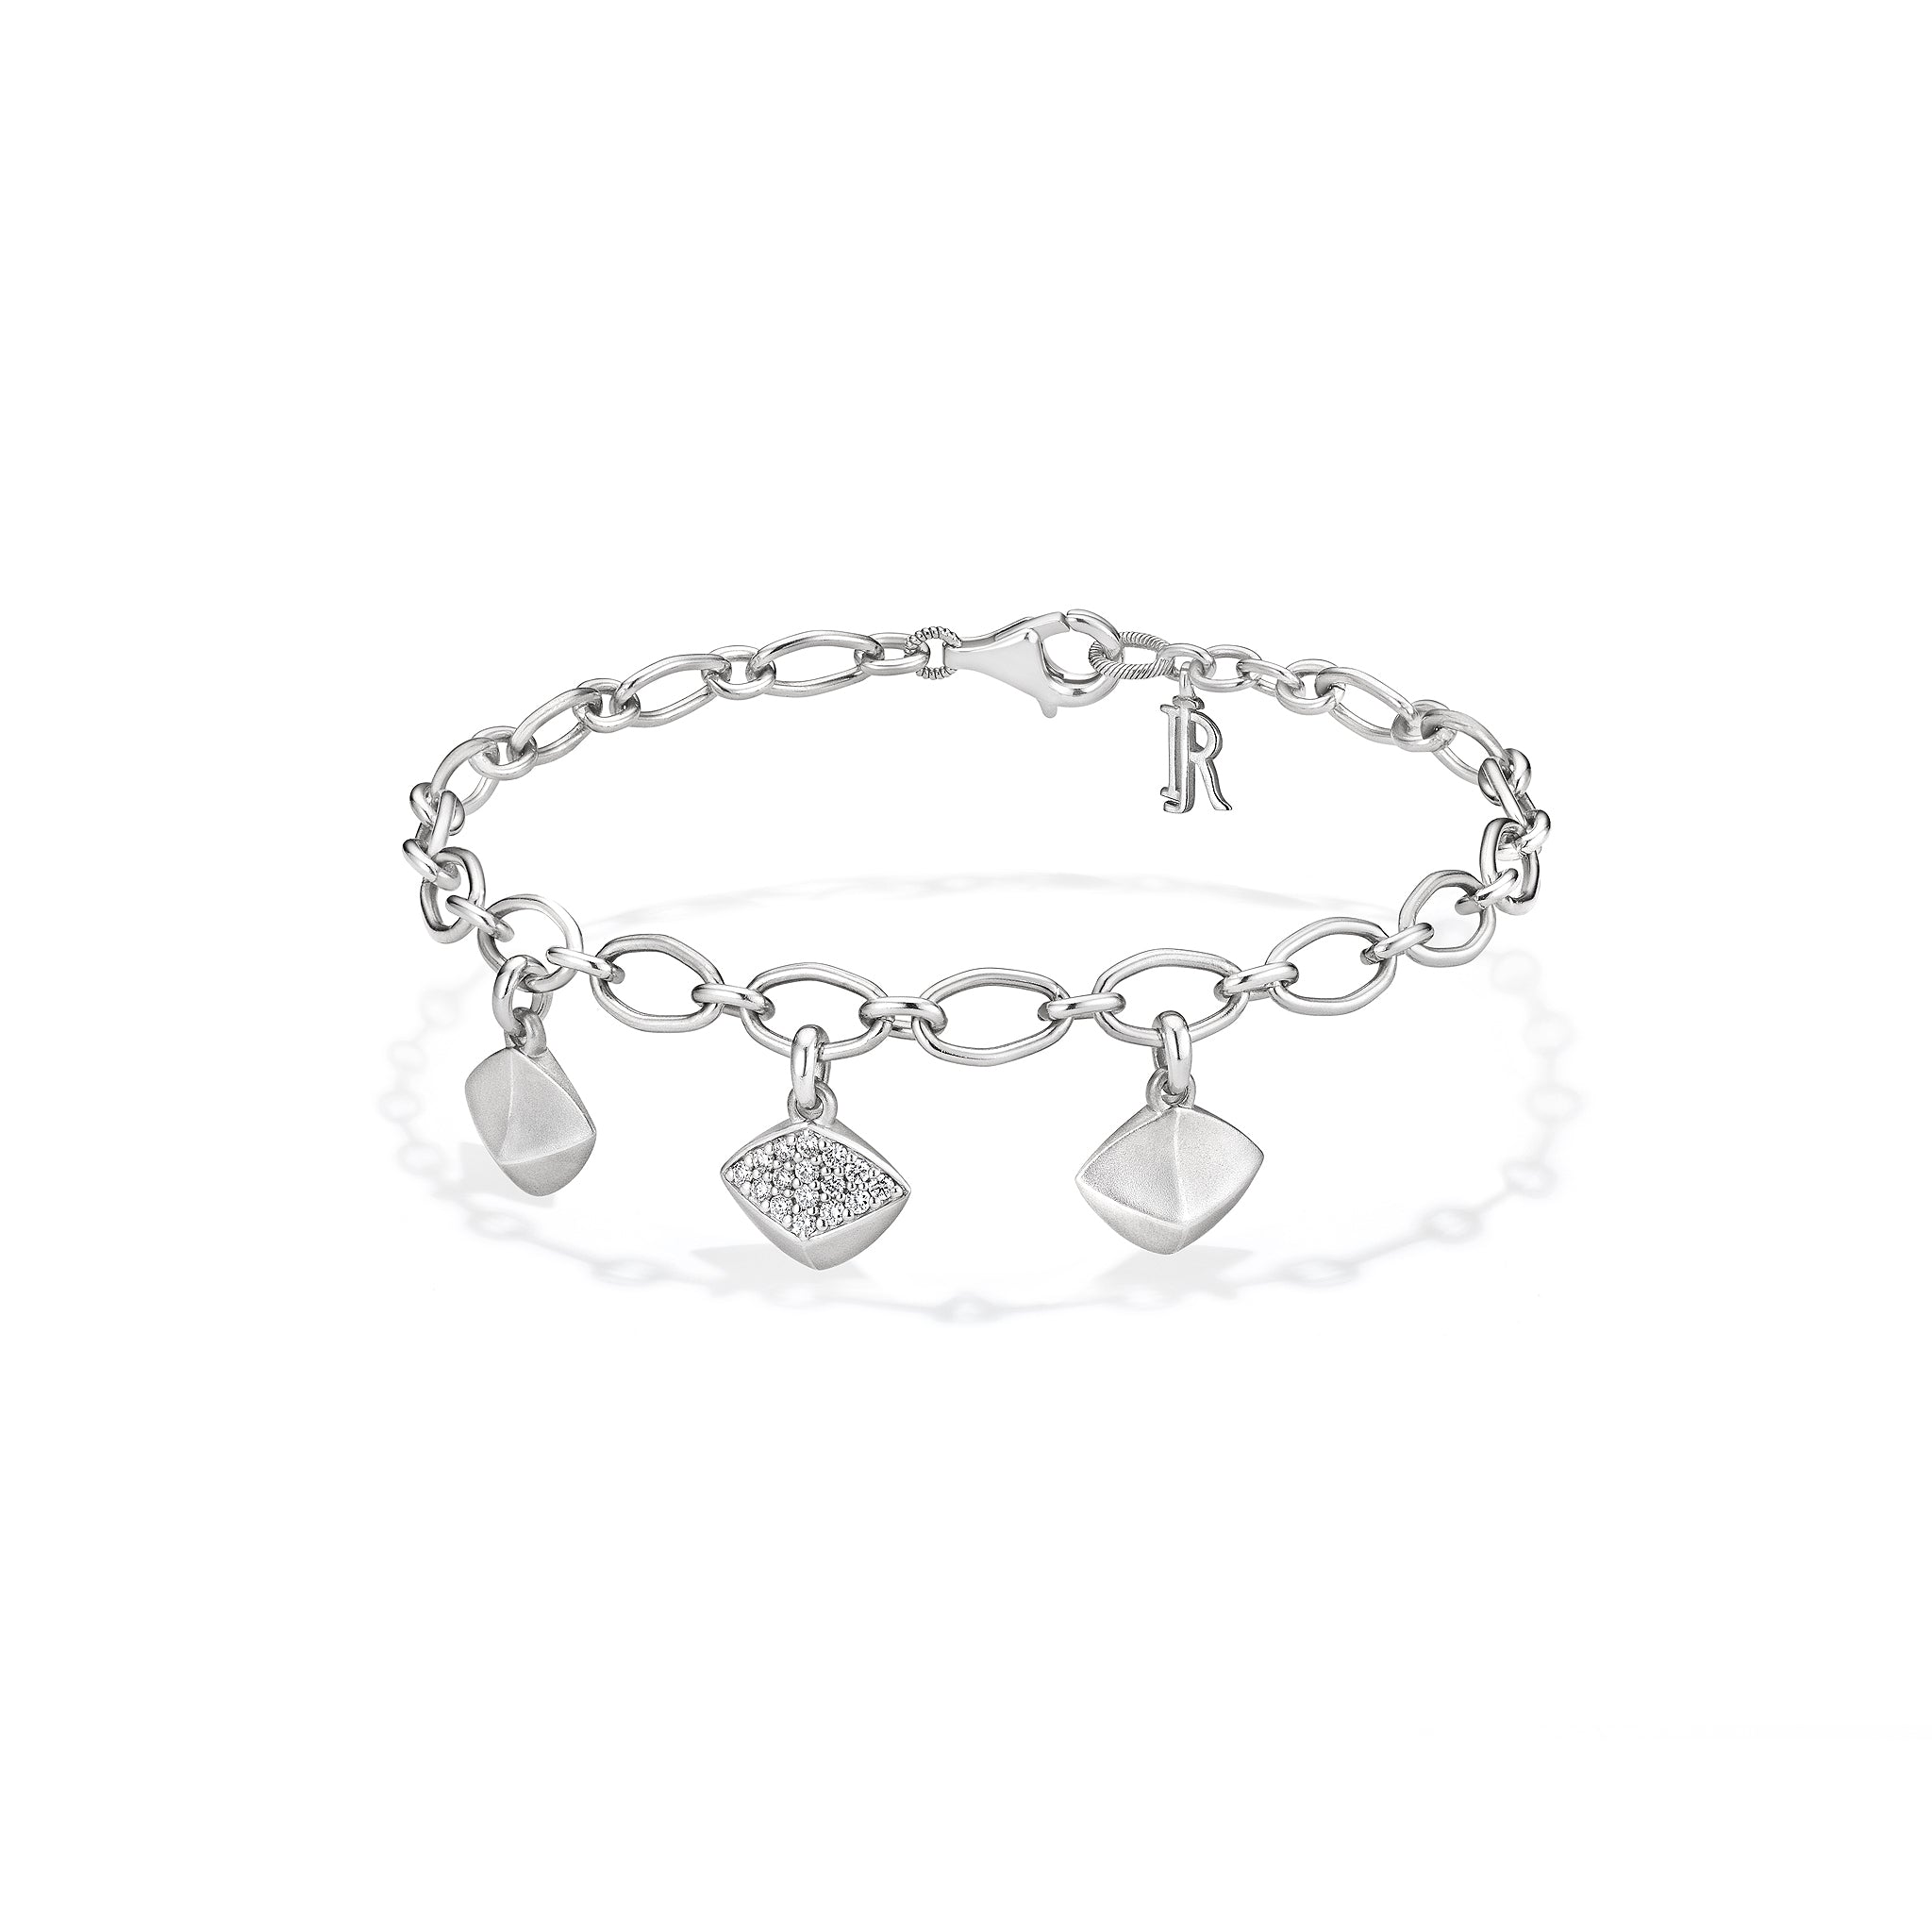 Iris Charm Bracelet With Diamonds